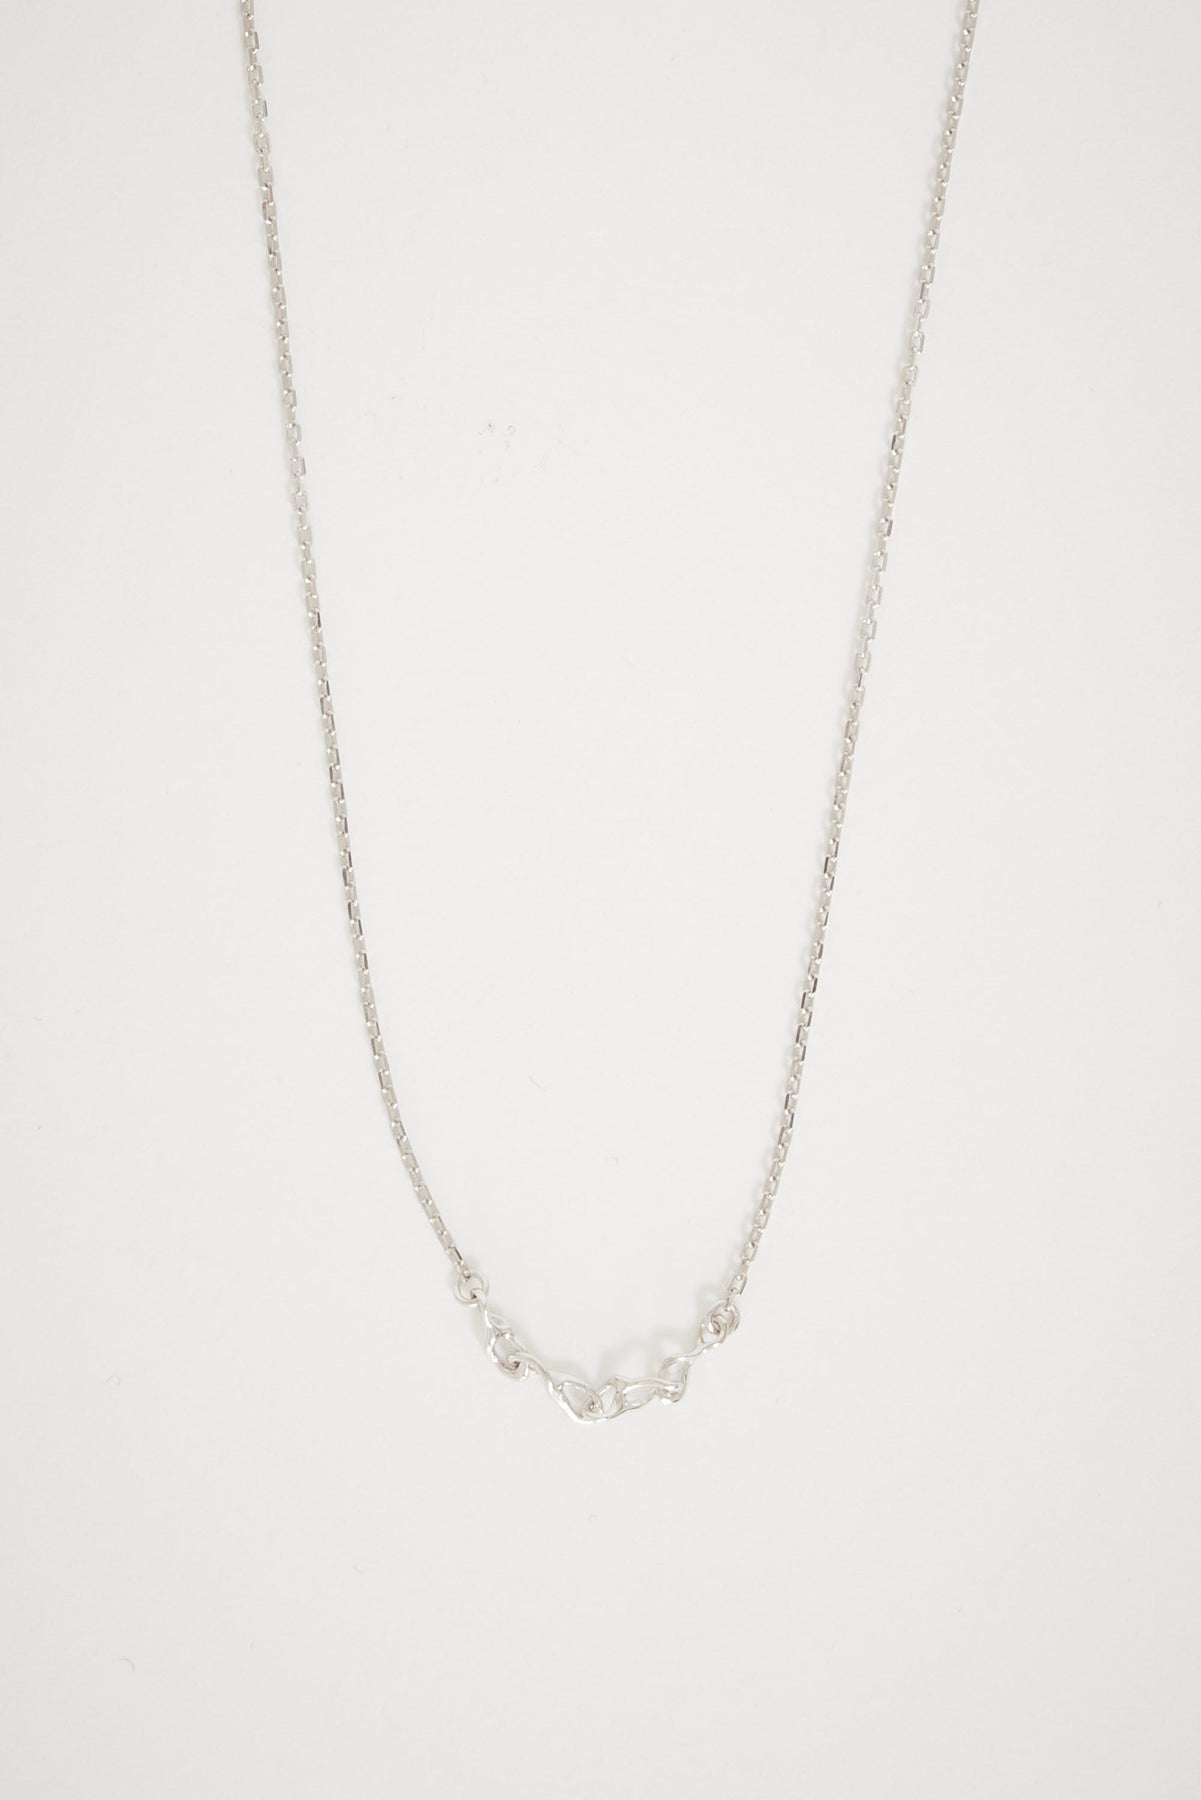 Maria Black Caria Necklace Silver | Maplestore